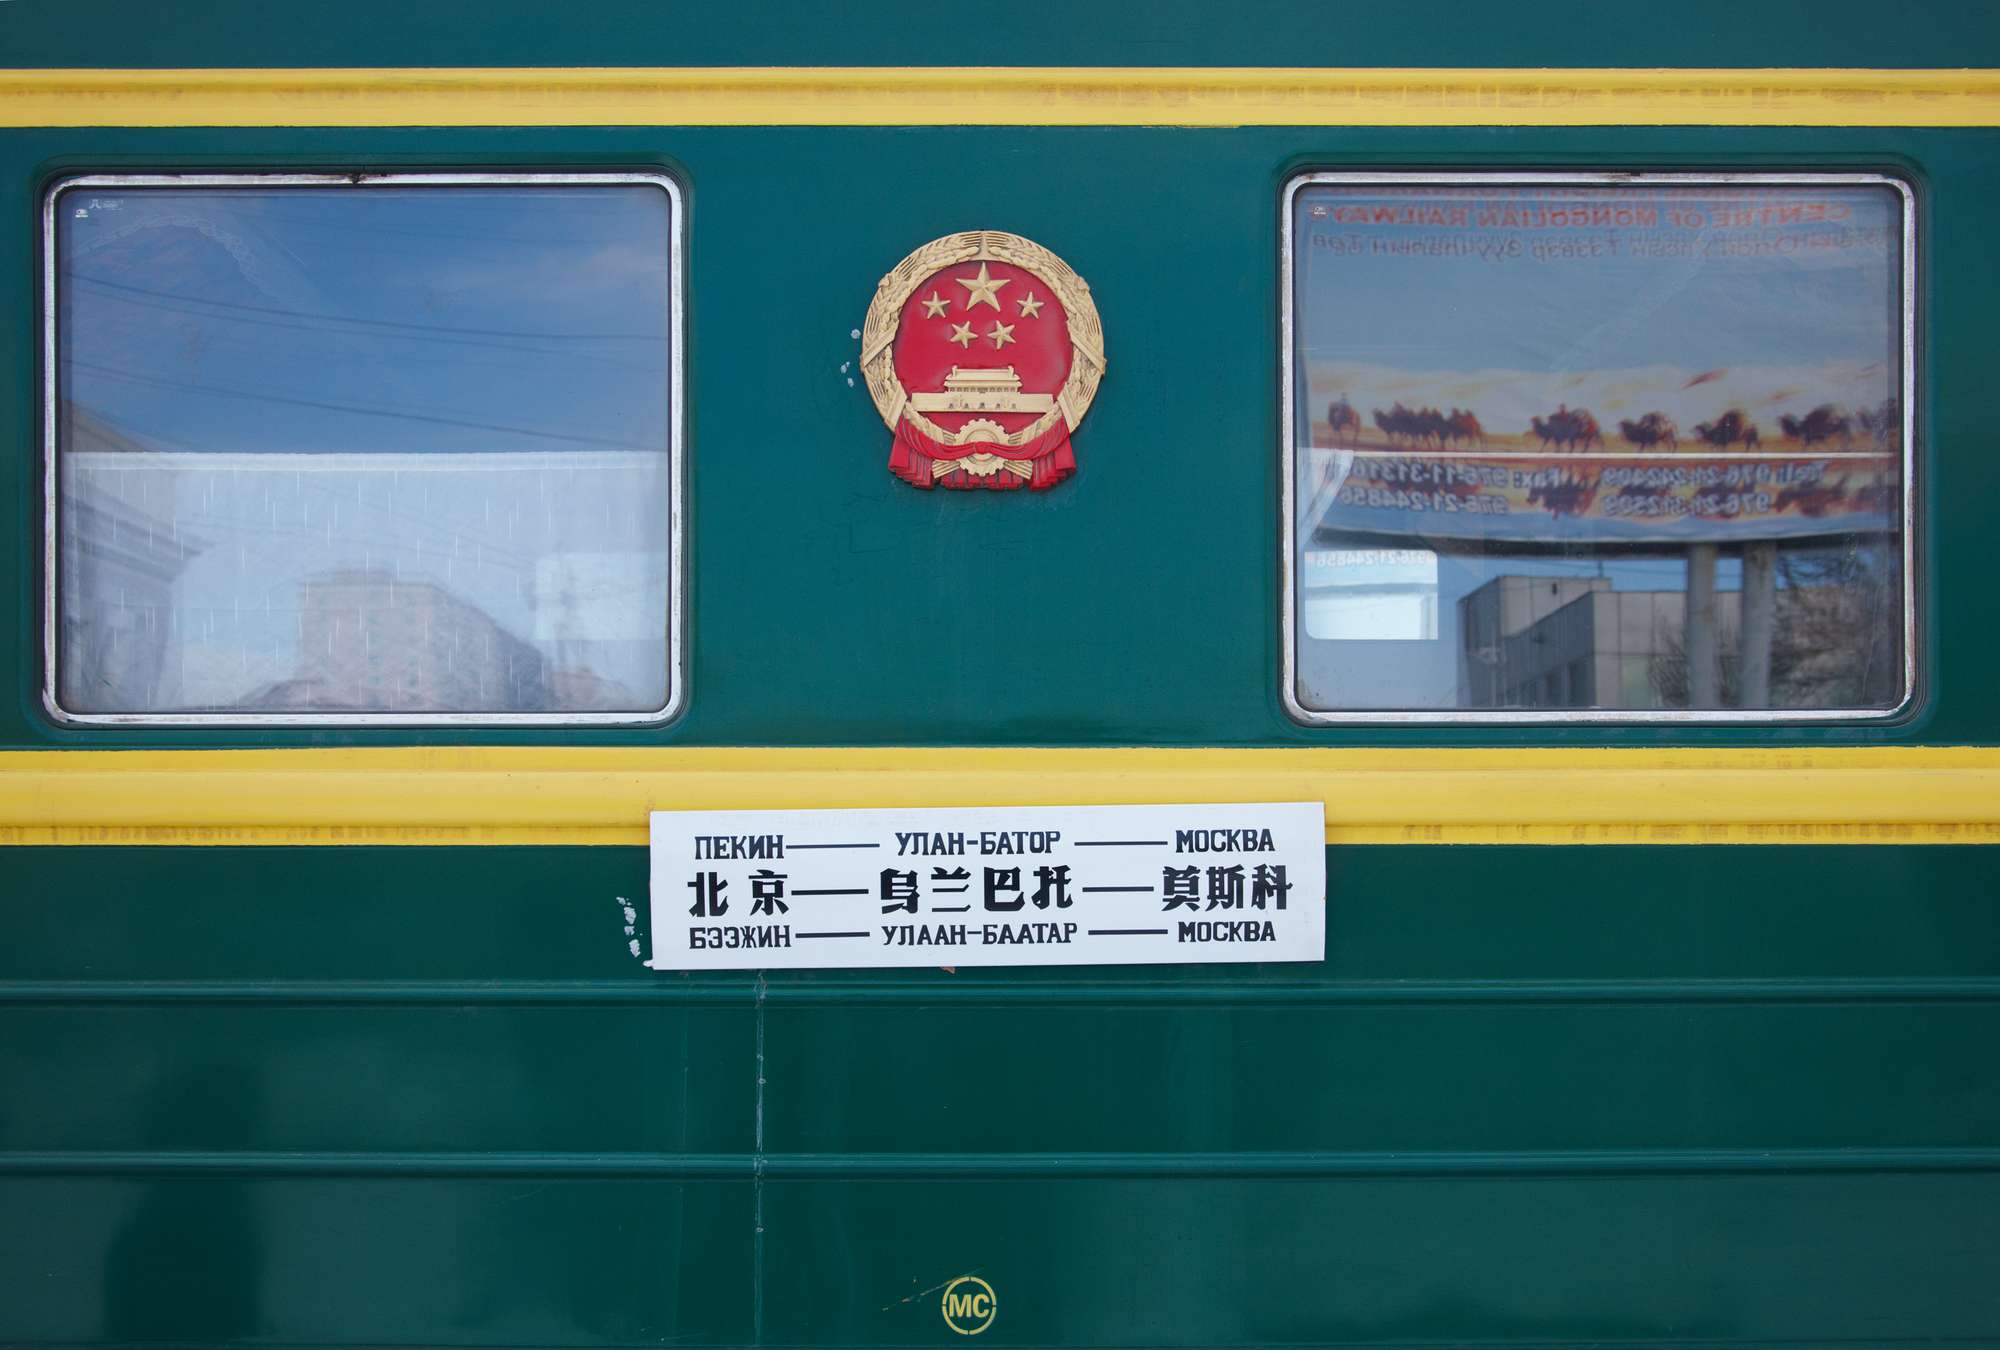             Wagon Green - fotomural nostalgia ferroviaria
        